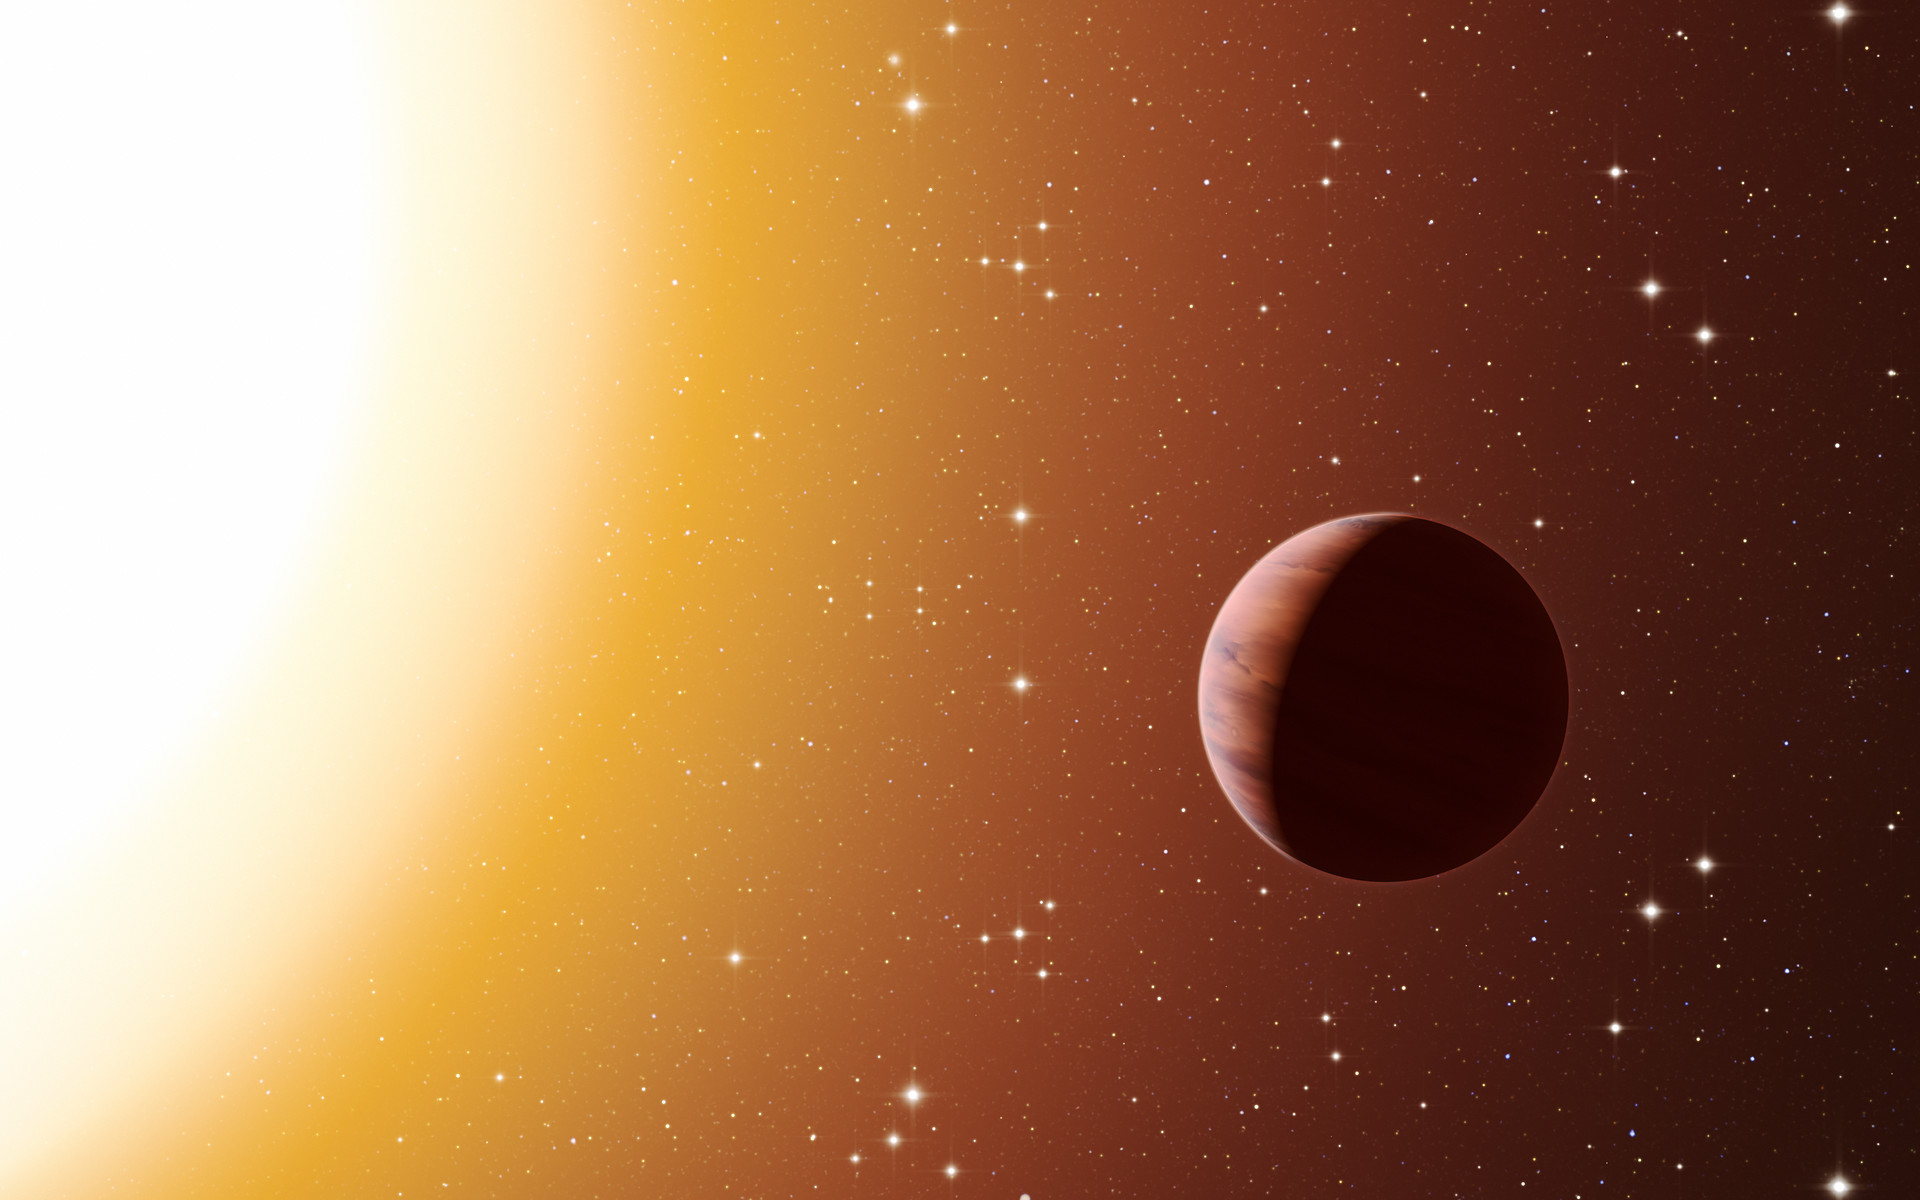 Sur cette vue d'artiste, figure une planète de type Jupiter chaud en orbite proche, autour de l'une des étoiles du riche et vieil amas Messier 67 dans la constellation du Crabe. Les astronomes ont découvert, au sein de l'amas, bien plus de planètes de ce type que prévu. Ce surprenant résultat fait suite à l'utilisation de divers télescopes et instruments, parmi lesquels le spectrographe Harps, à l'Observatoire de La Silla de l'ESO, au Chili. L'environnement plus dense d'un amas favorise de plus fréquentes interactions entre planètes et étoiles proches, ce qui peut expliquer cet excès de Jupiters chauds. © ESO/L. Calçada